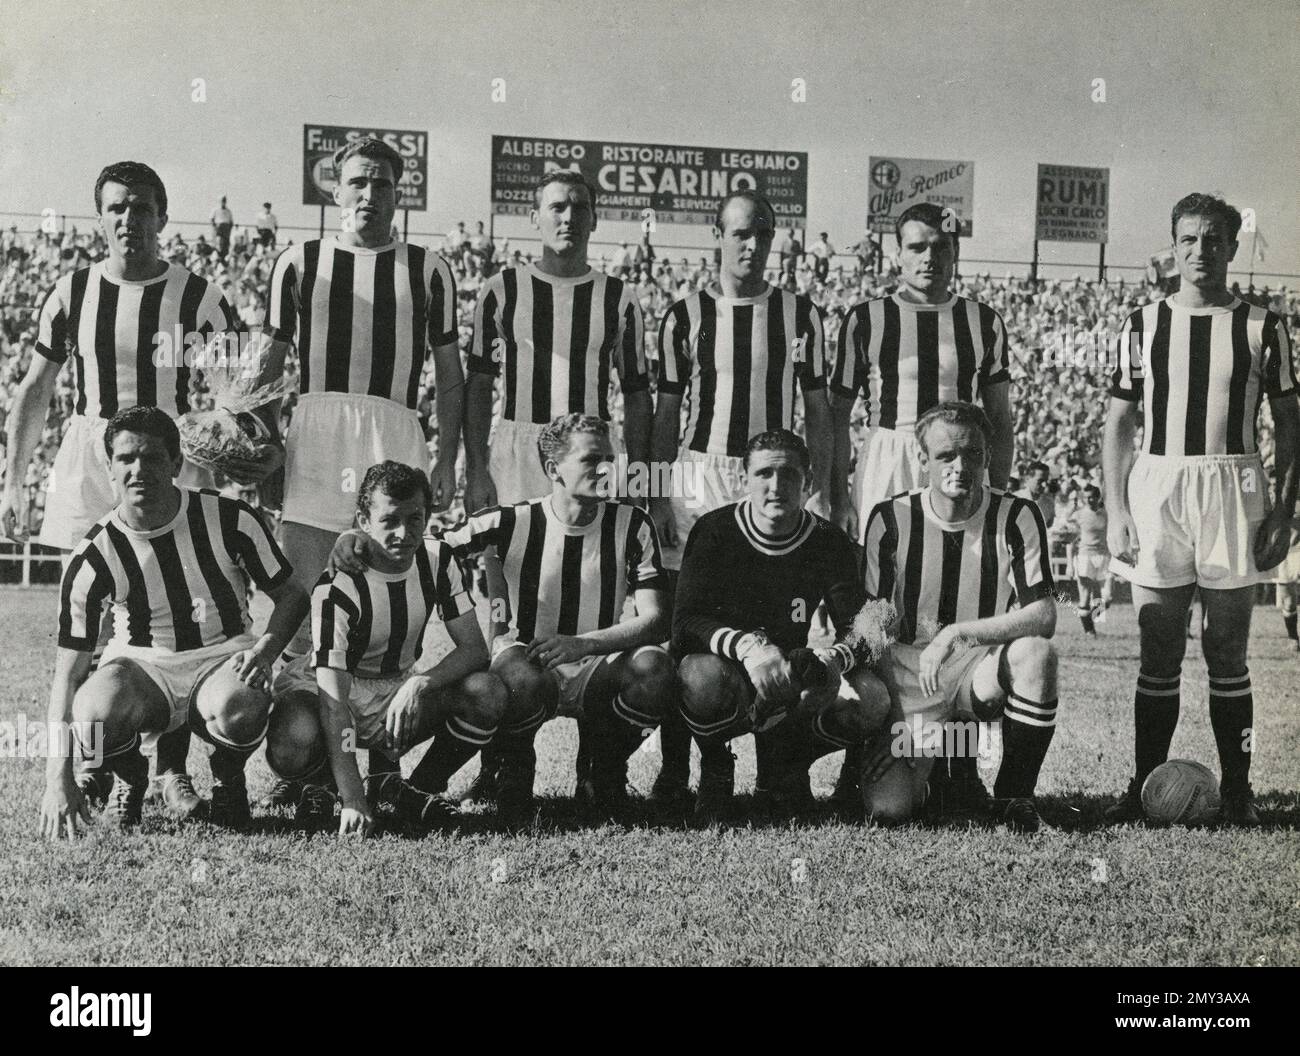 Italienische Fußballmannschaft Juventus von Giancarlo Boniperti, Italien 1952 Stockfoto